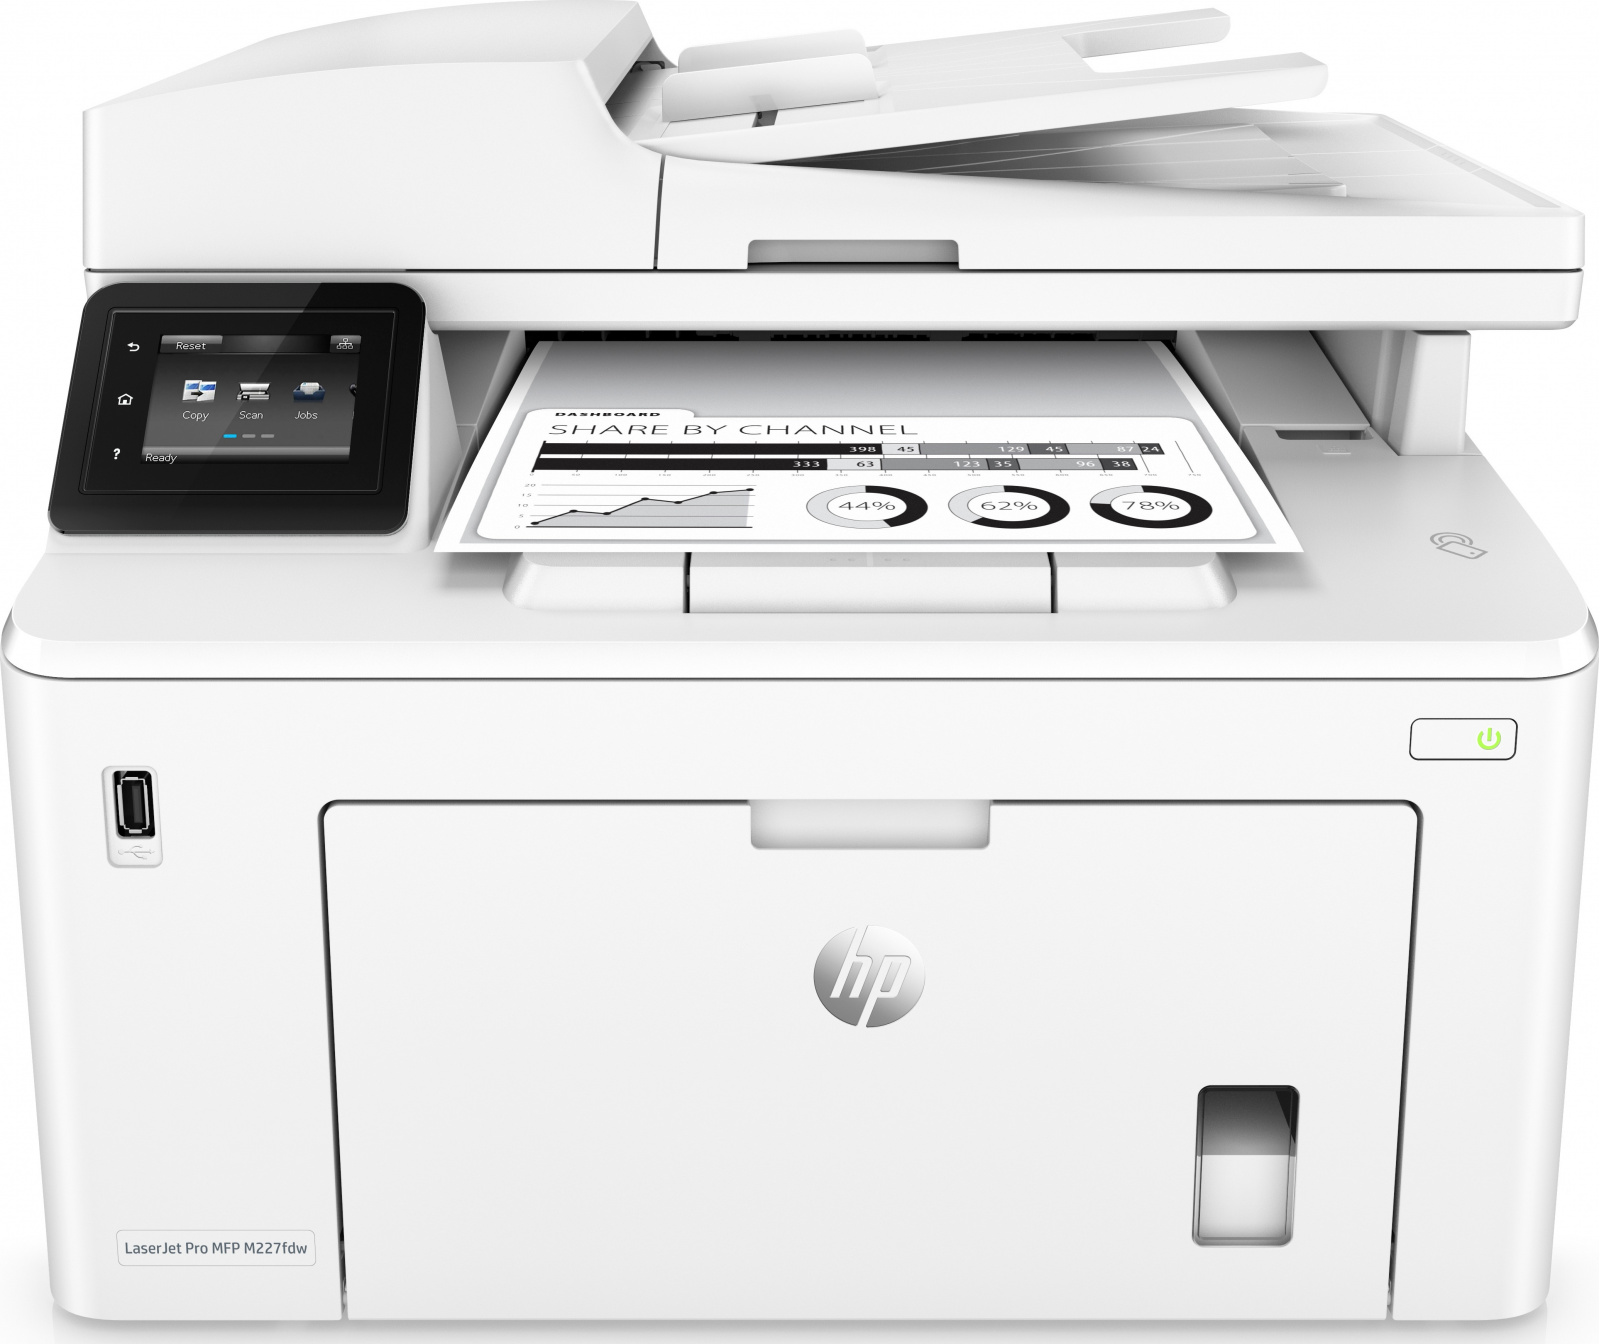 Náplně do tiskárny HP LaserJet Pro MFP M227fdw